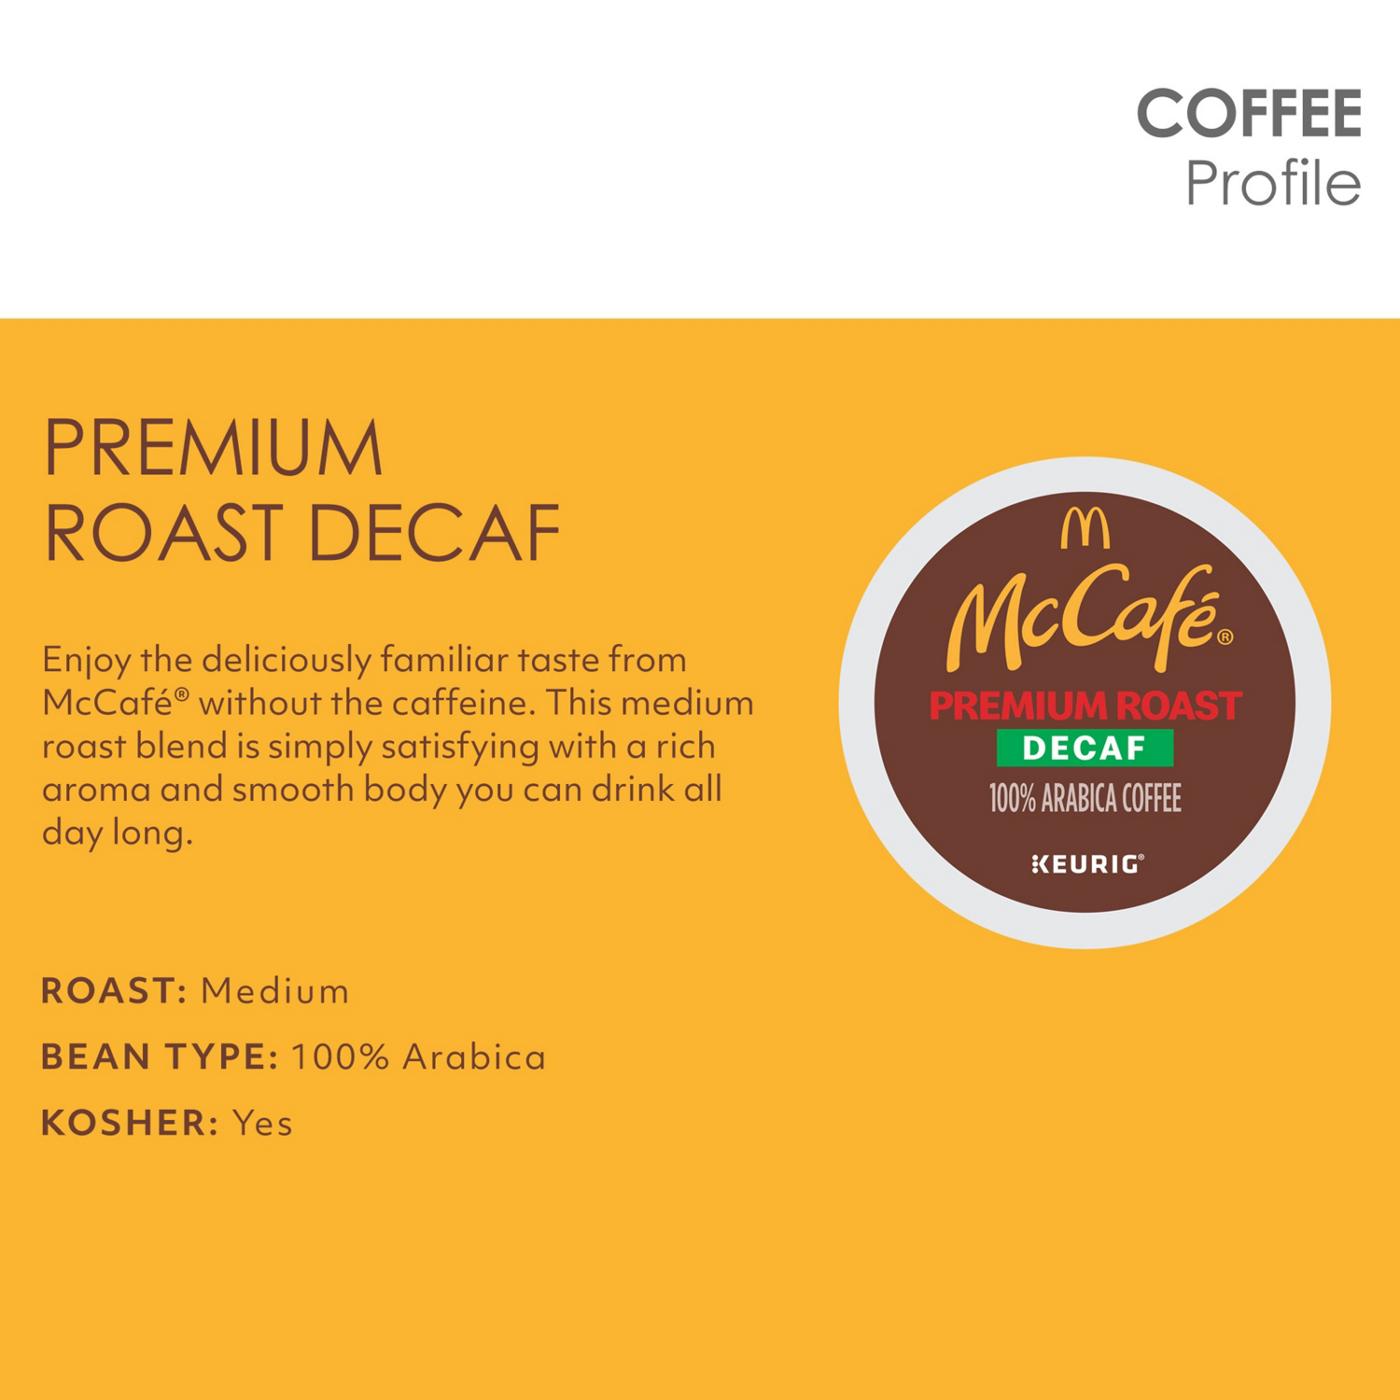 McCafe Premium Roast Decaf Medium Roast Single Serve Coffee K Cups; image 10 of 10